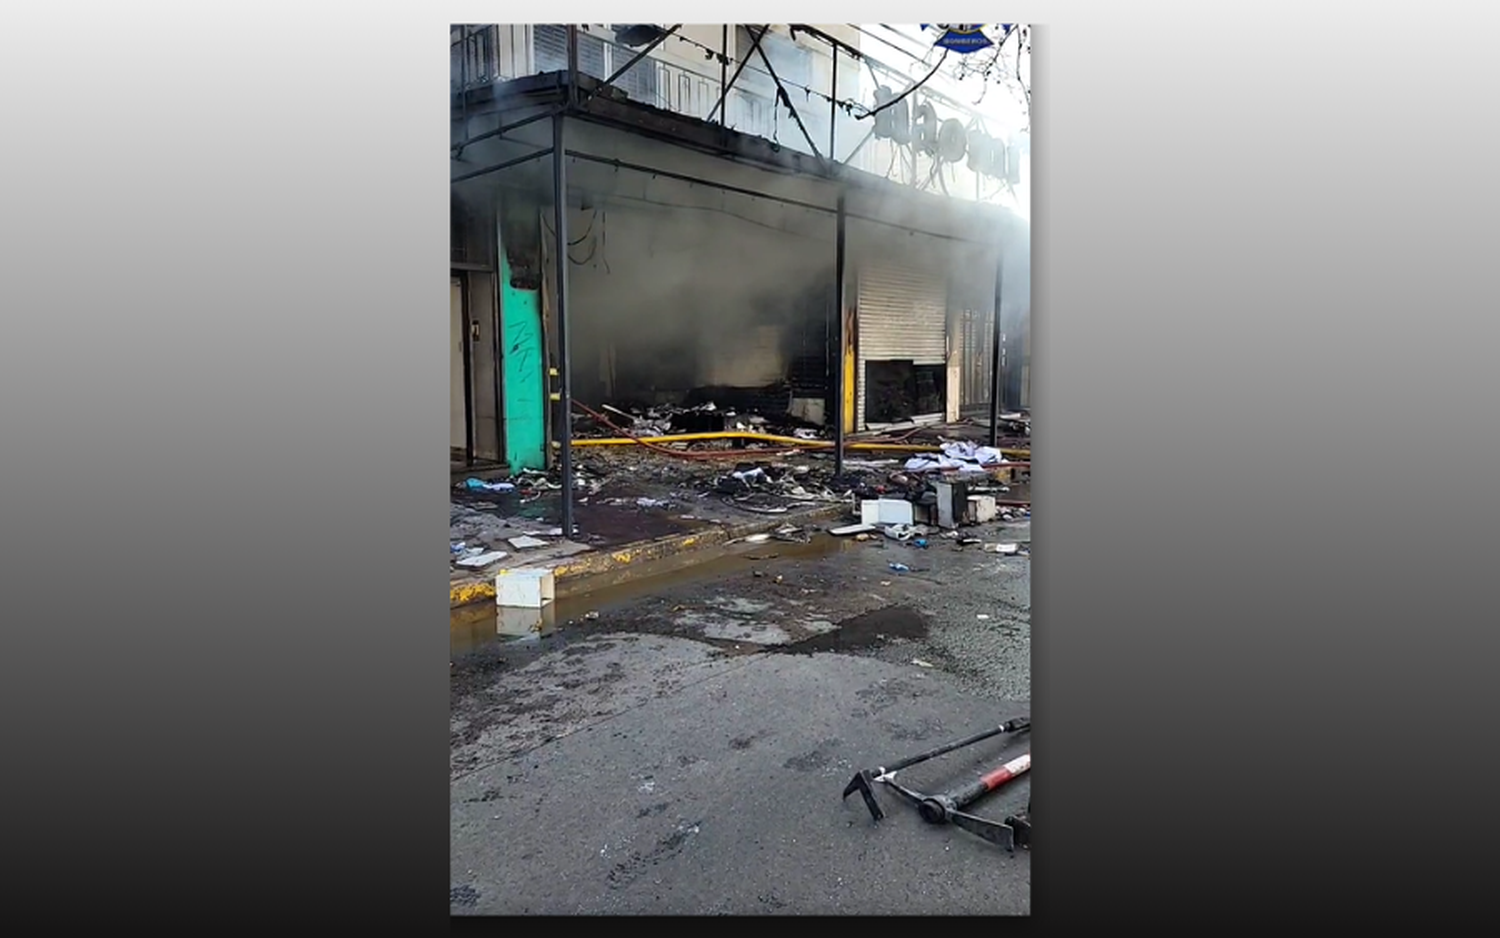 Incendio y destrucción total en local comercial de Burzaco